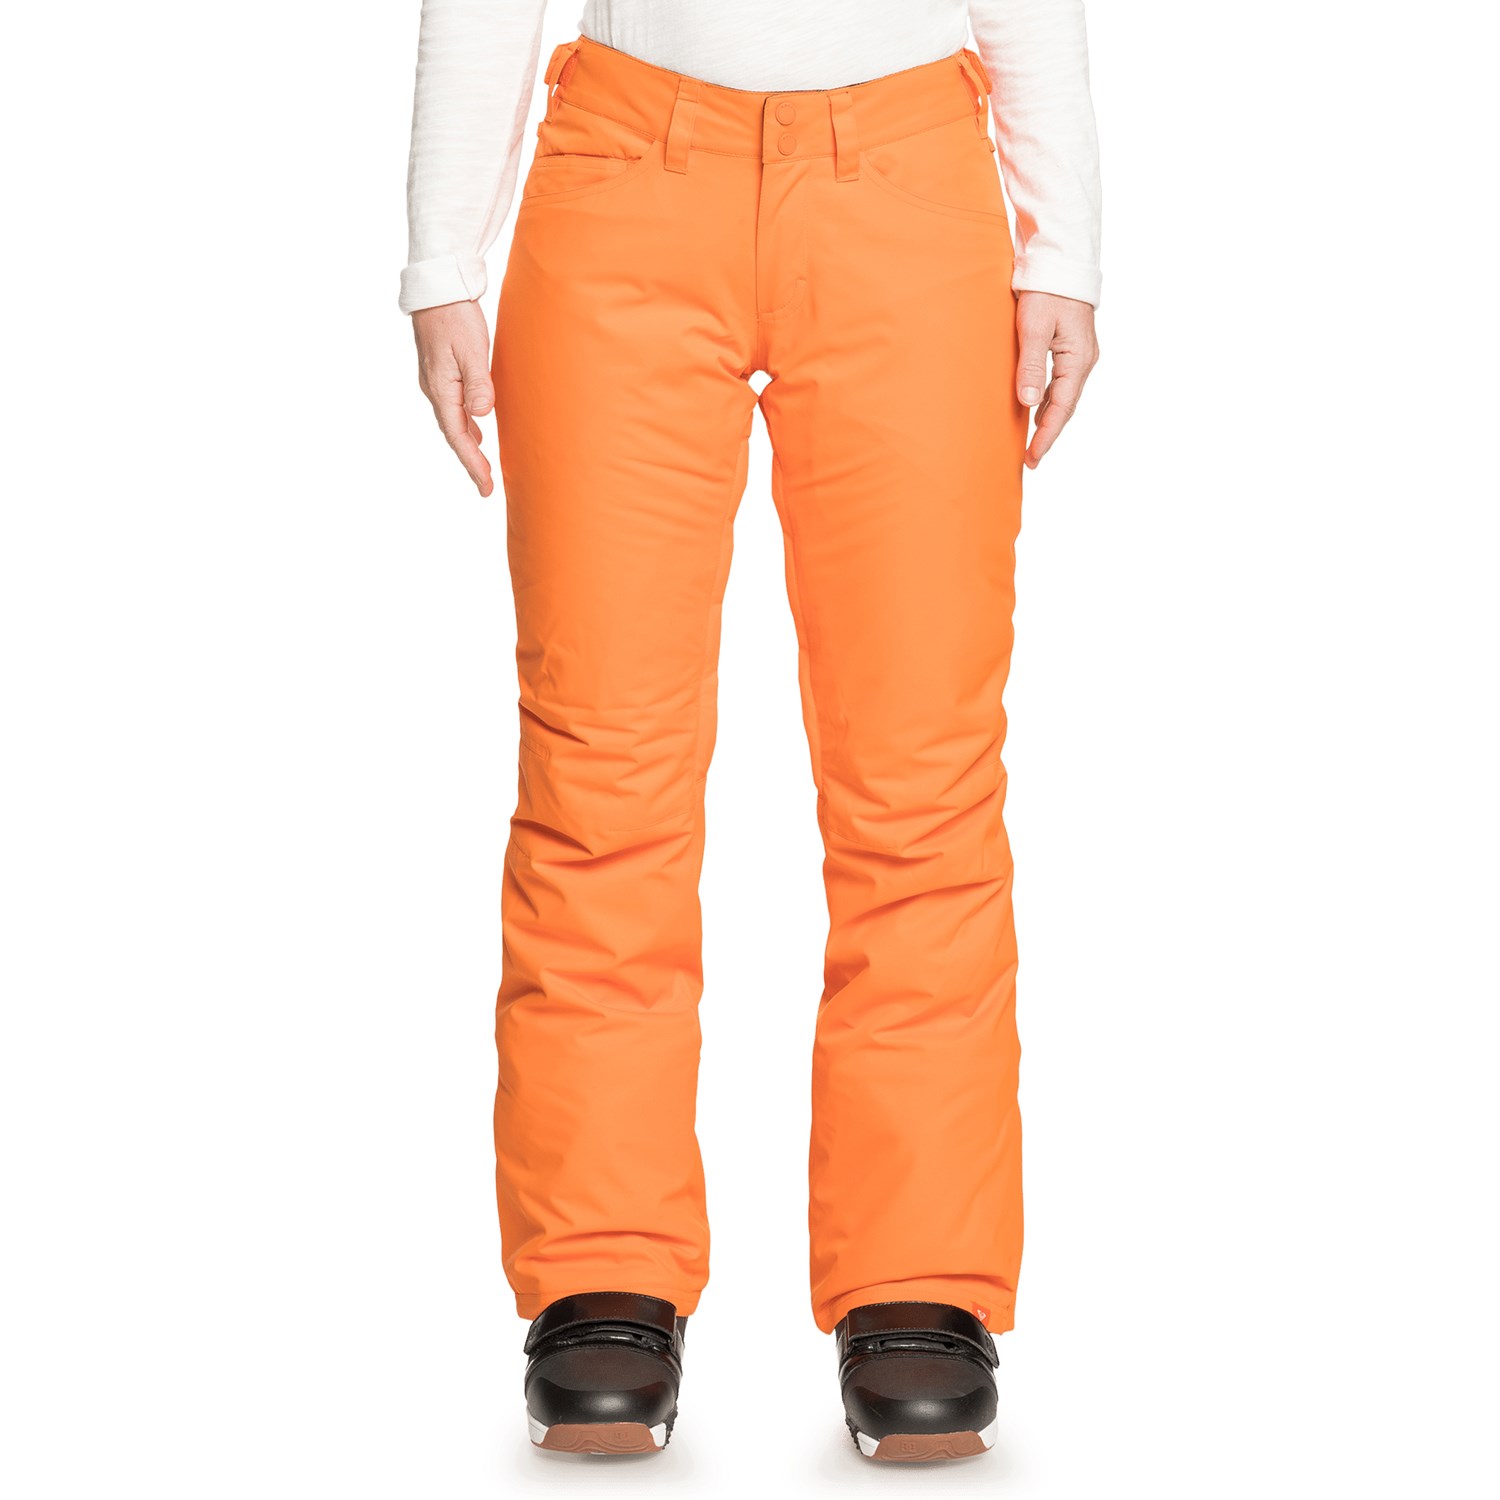 Roxy Backyard - Ski trousers Women's, Buy online